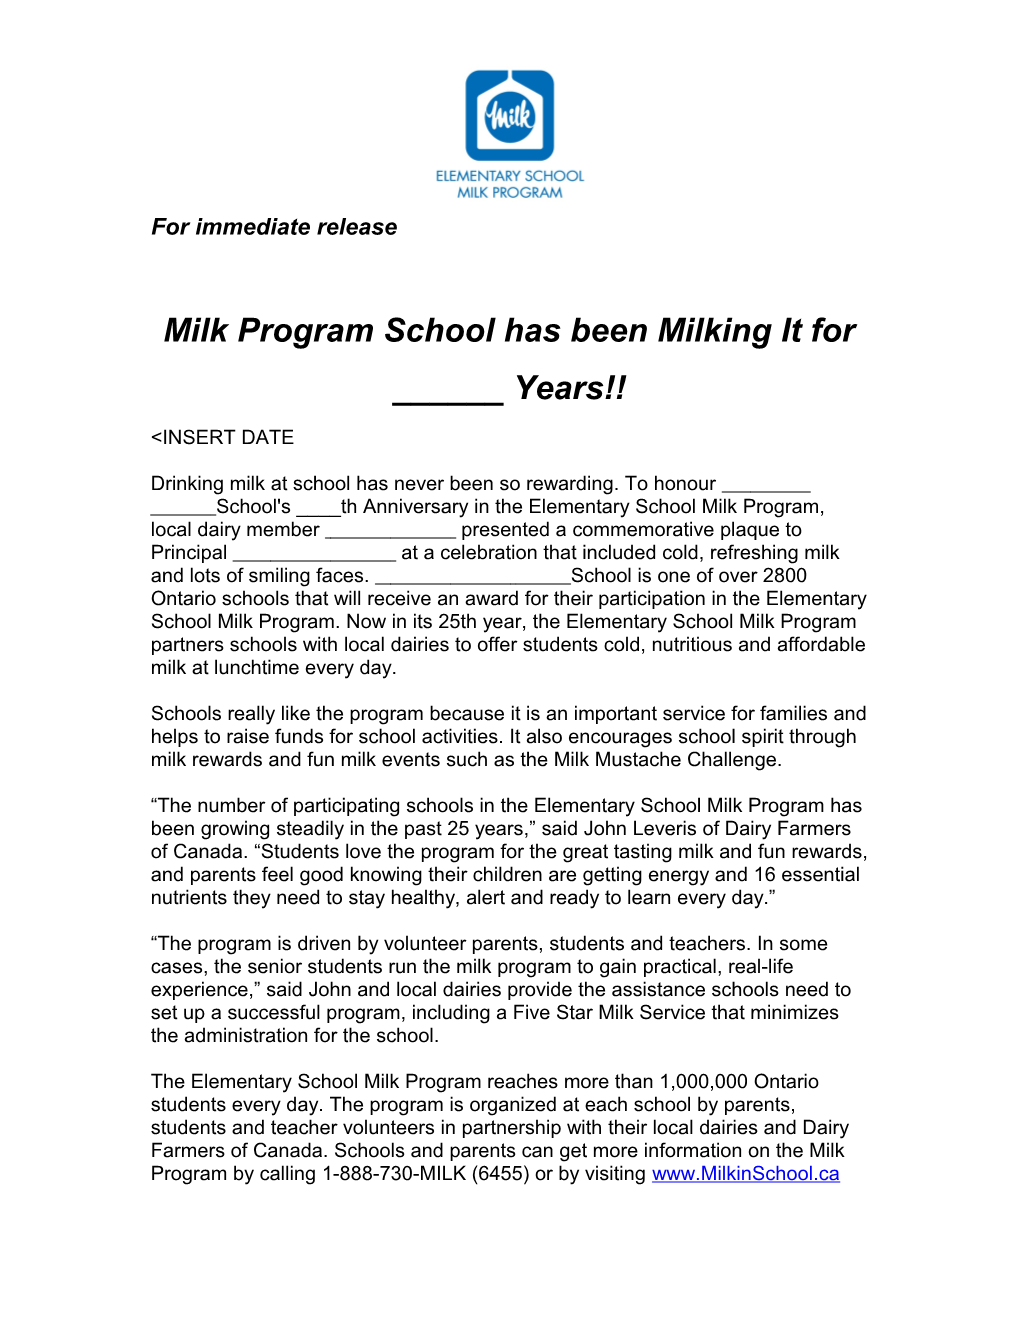 Milk Program School Has Been Milking It for ______Years